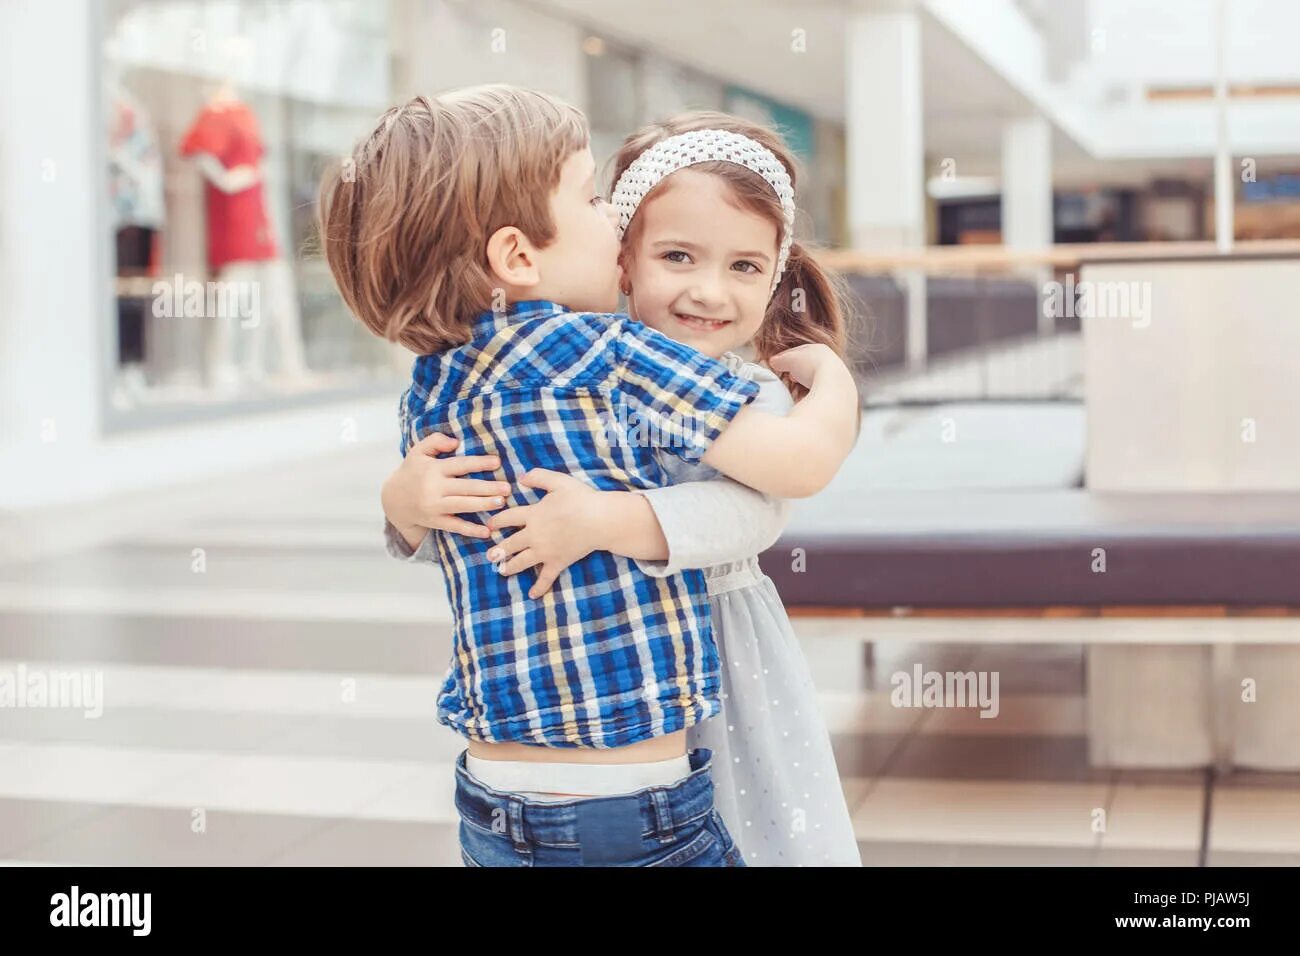 Младенцы обнимаются Сток. Портрет двое детей мальчик и девочка фото. Модель объятия детские. Изображены 2 ребенка которые обнимают друг друга картинка.